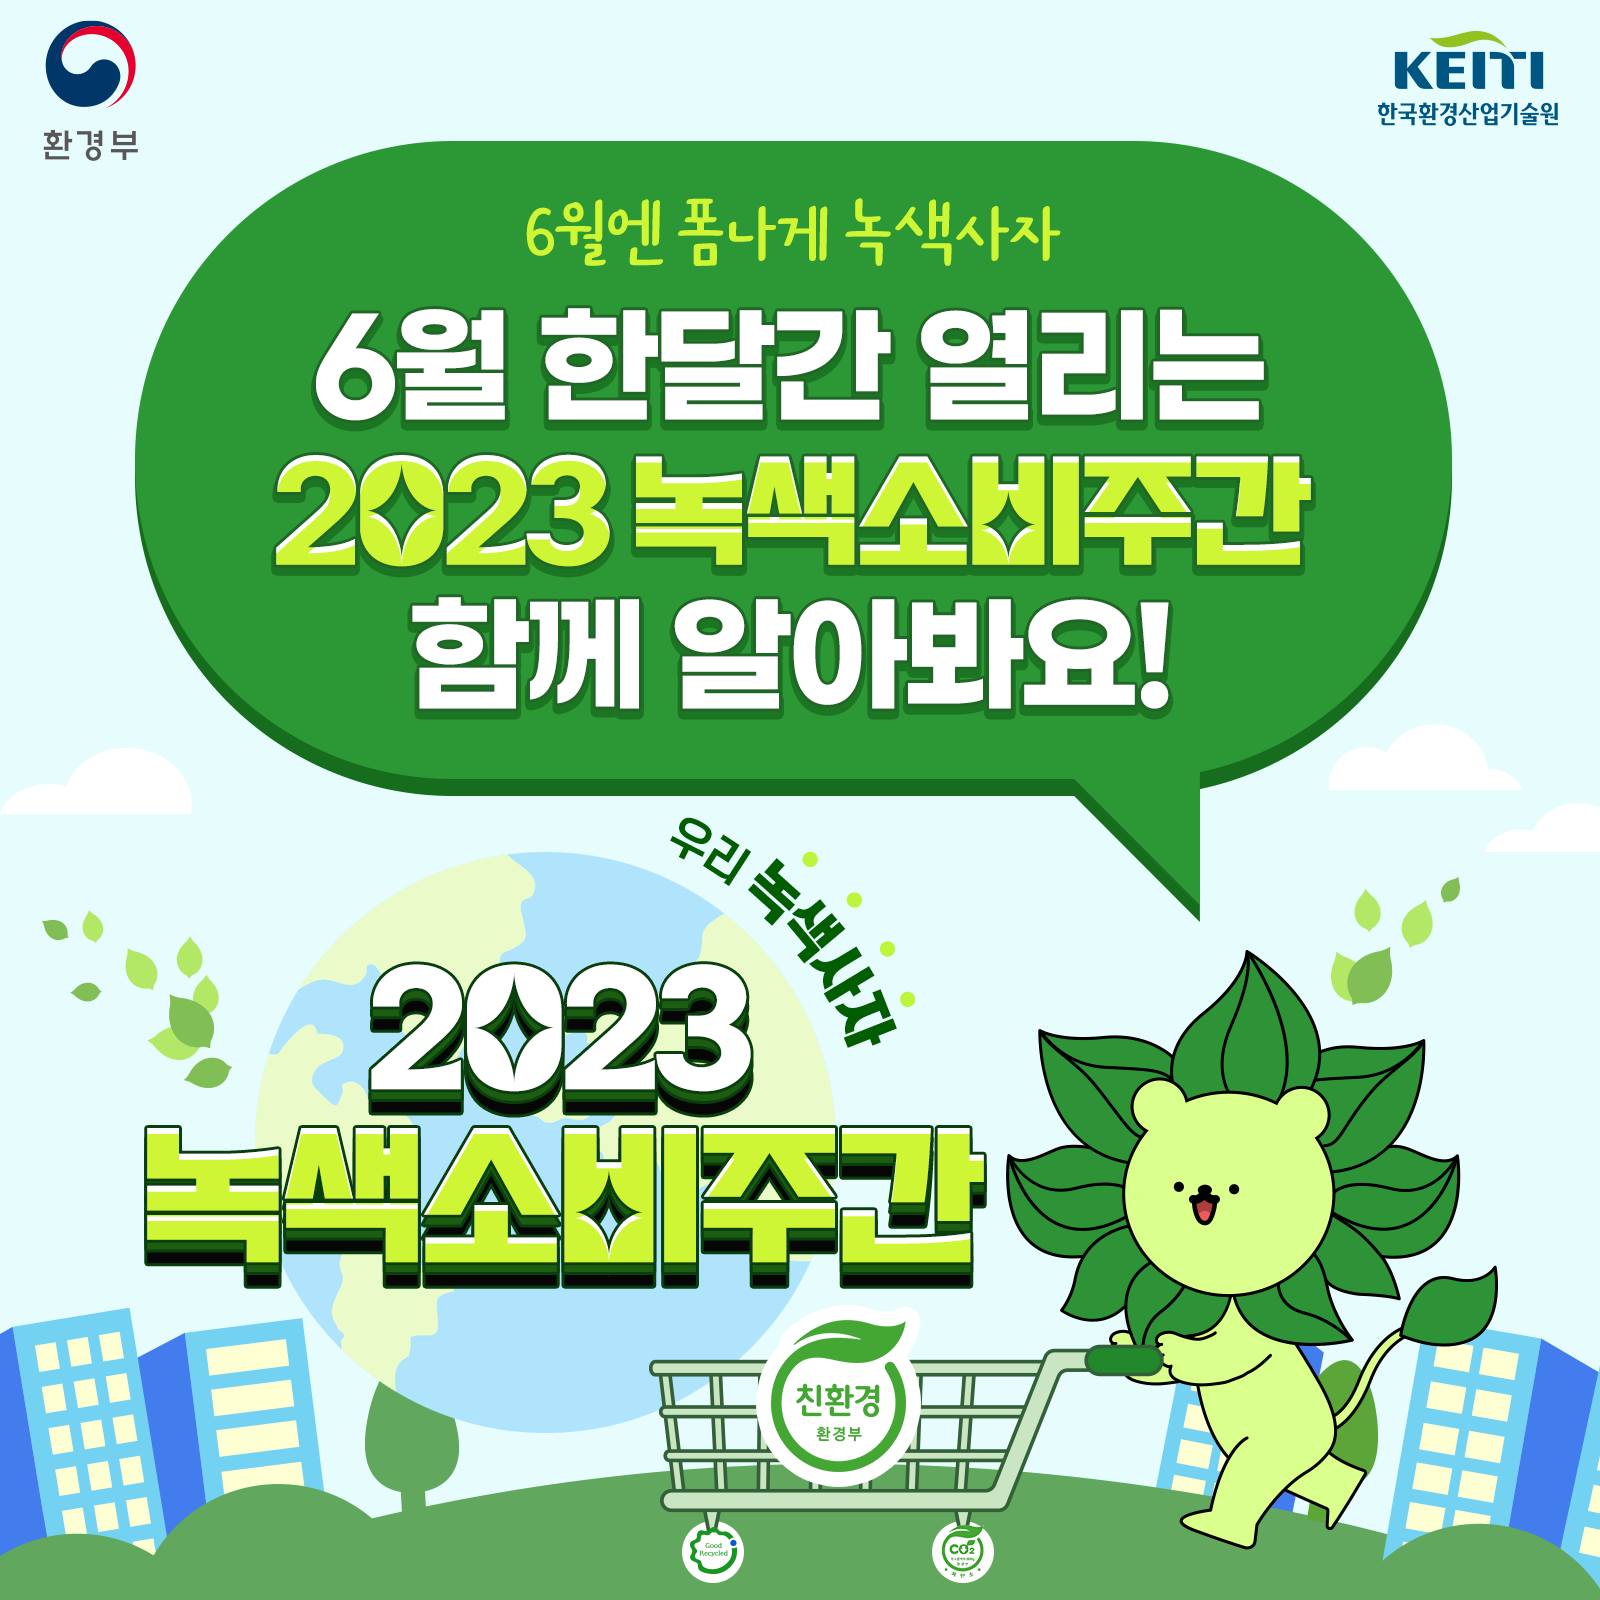 환경부 KEITI 한국환경산업기술원
6월엔 폼나게 녹색사자
6월 한달간 열리는 2023 녹색소비주간 함께 알아봐요!
우리 녹색사자
2023 녹색소비주간
친환경 환경부
